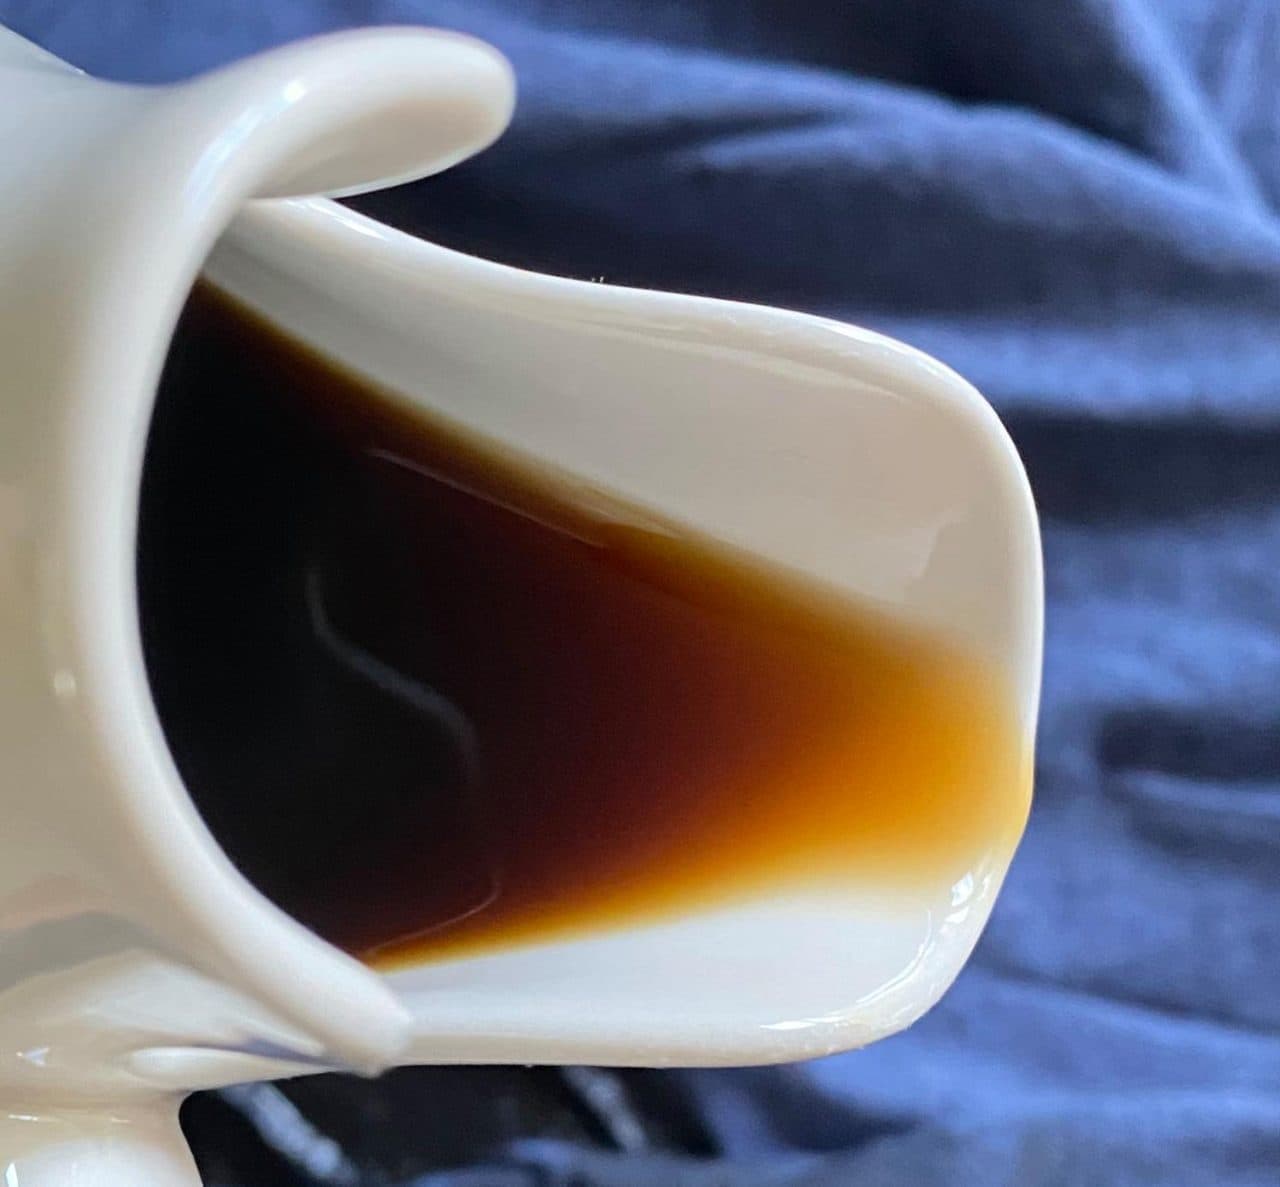 コーヒーがこぼれないマグカップ ソファーでリラックスしながら飲める「RELAXX MUG」